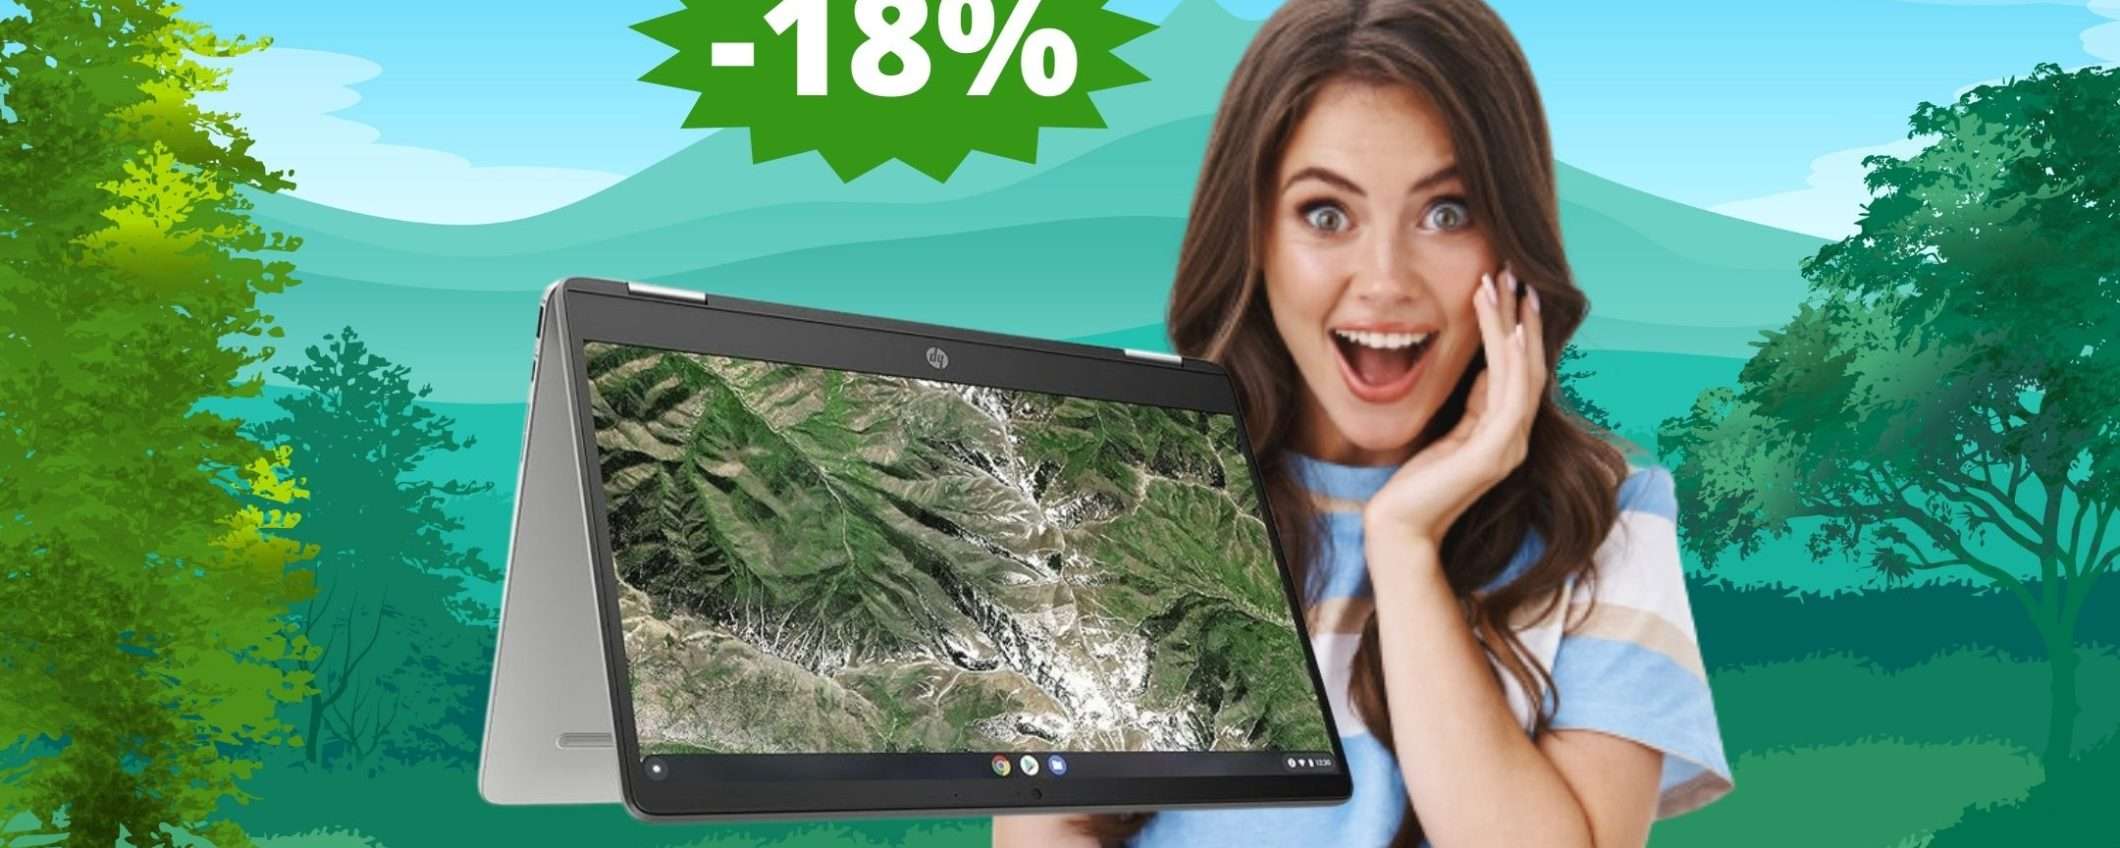 HP Chromebook x360: sconto ESCLUSIVO su Amazon (-18%)